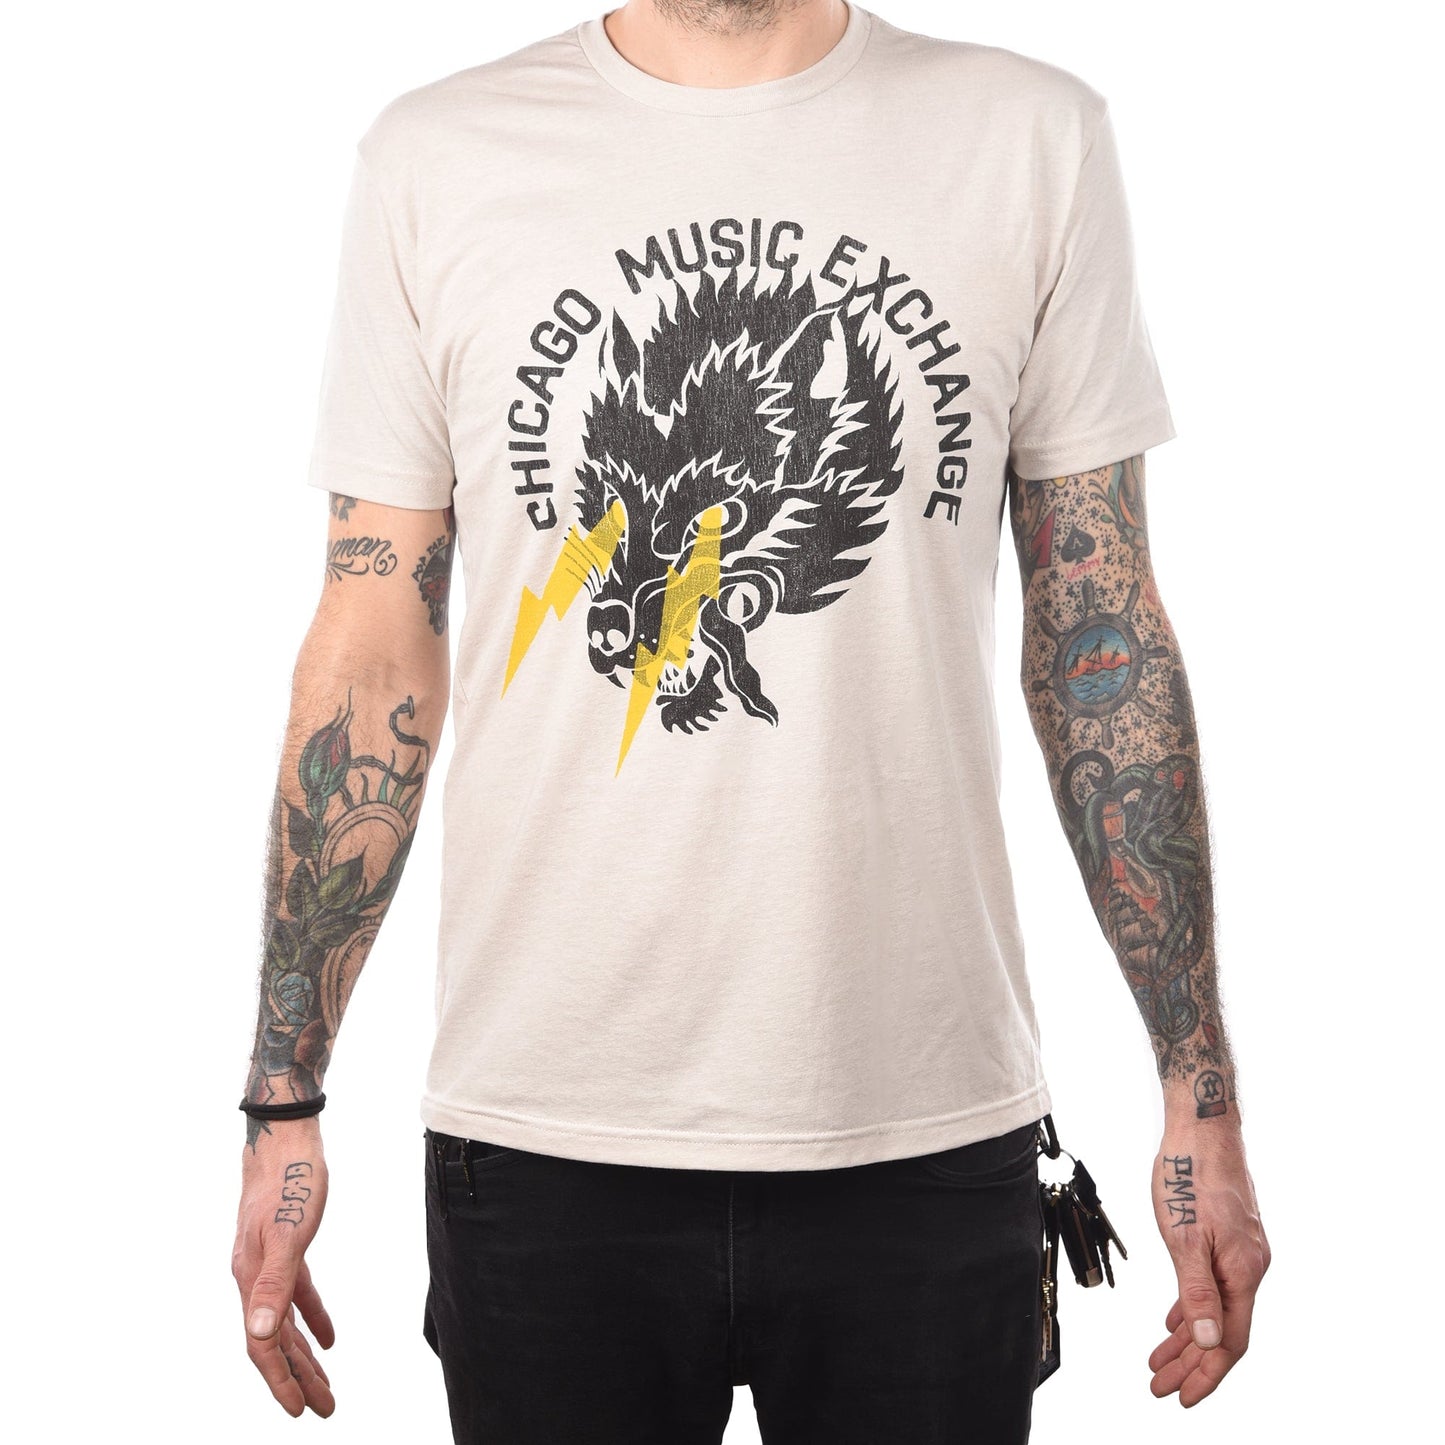 CME Wolf Lightning T-Shirt Accessories / Merchandise